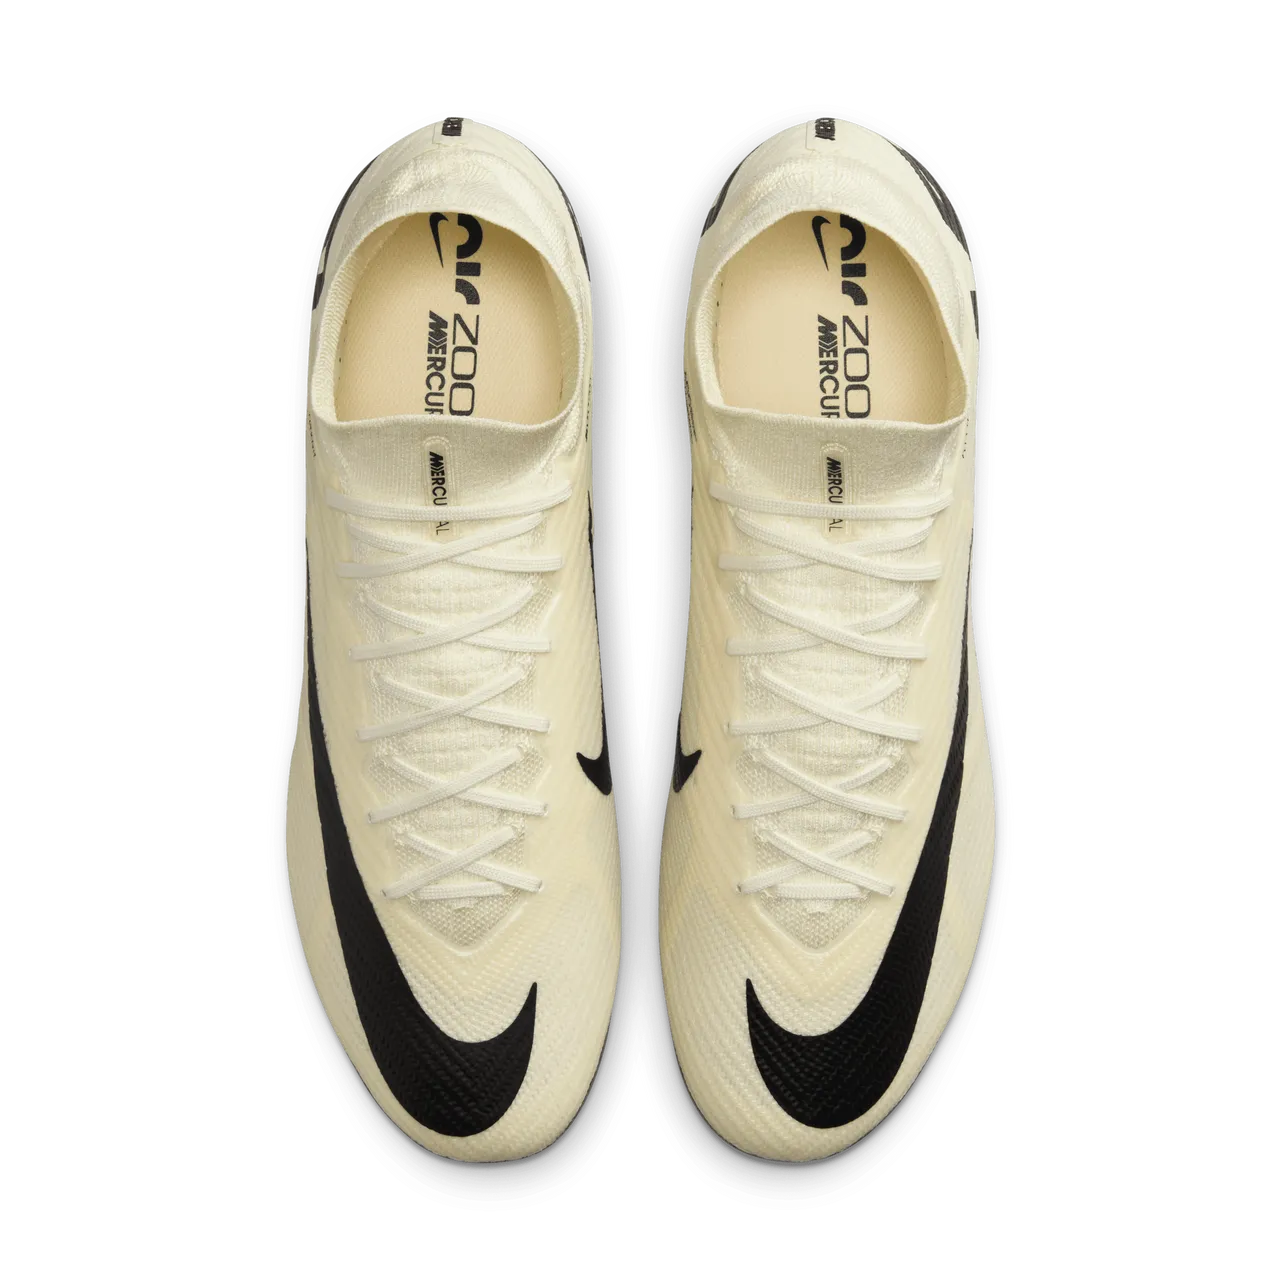 Nike Mercurial Superfly 9 Elite high top voetbalschoenen (stevige ondergrond) - Geel